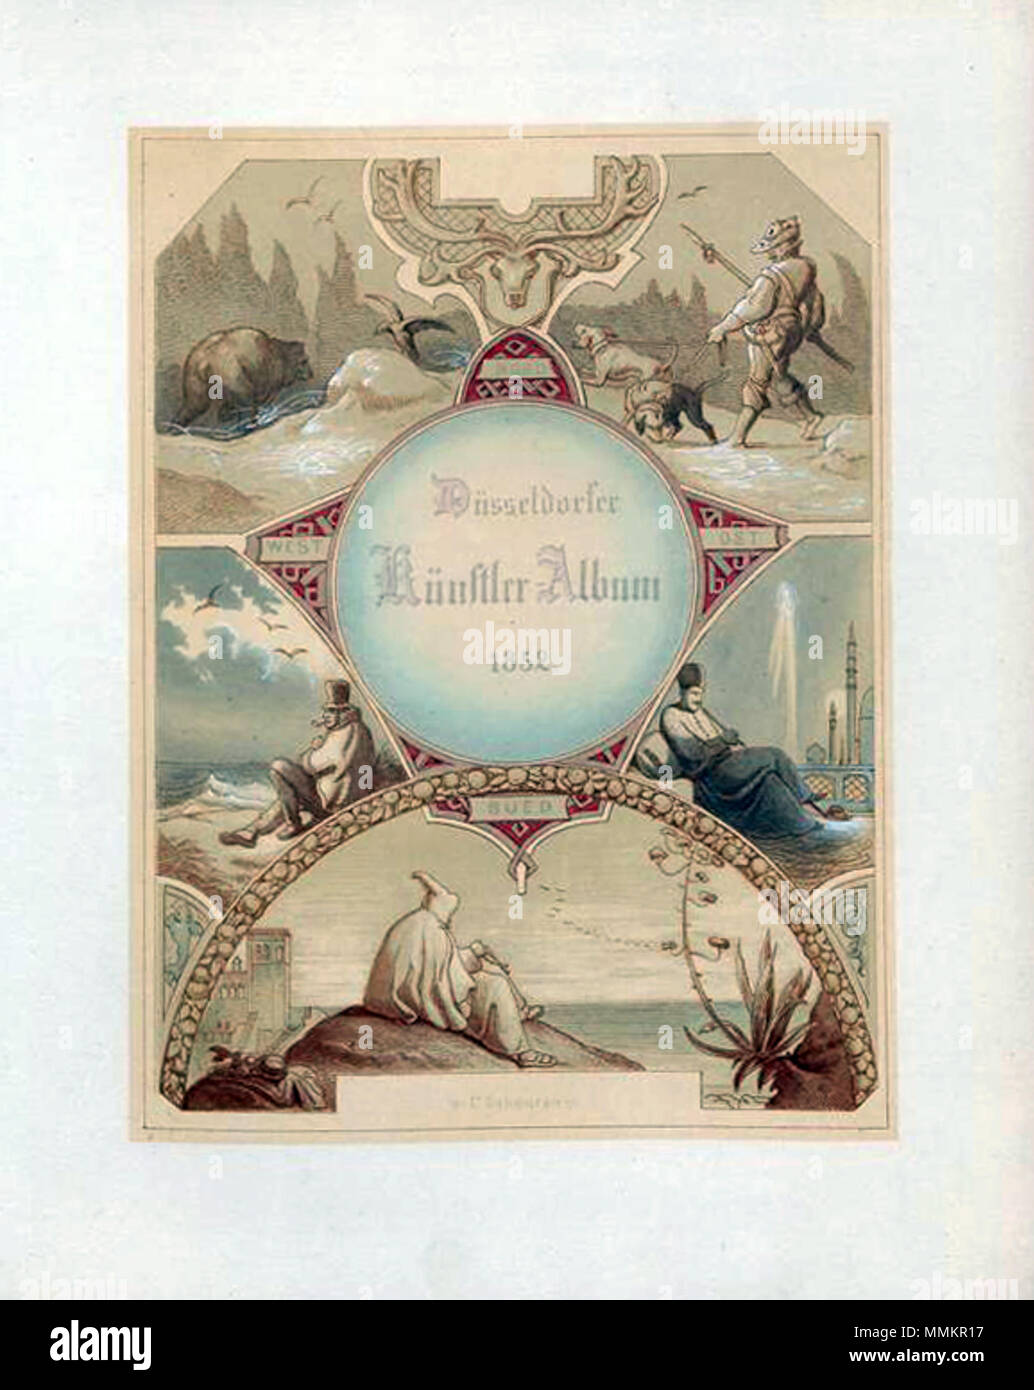 Düsseldorfer Künstler-Album 1852, Titelblatt illustriert von Caspar Scheuren Foto Stock